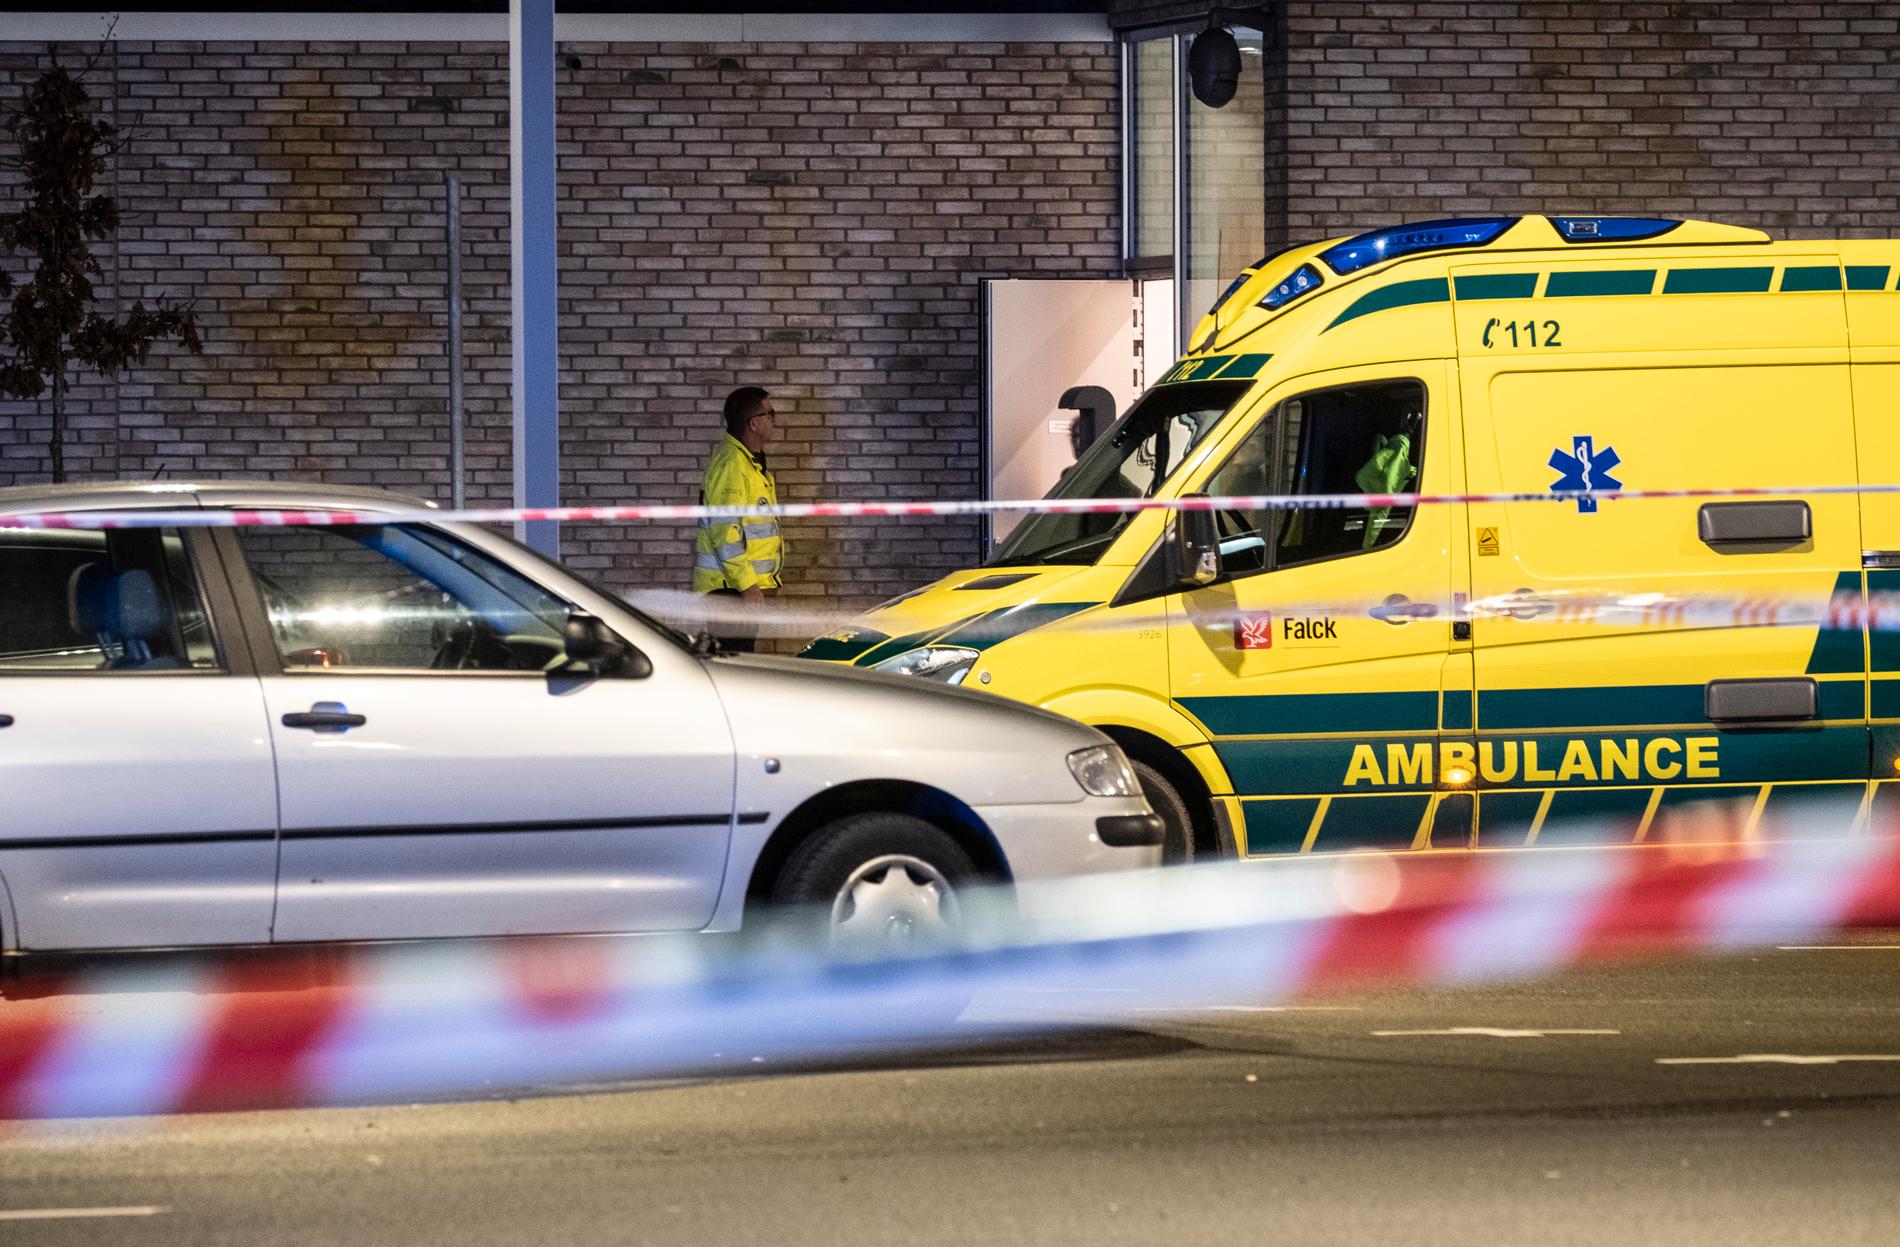 Under kuppen togs anstaltspersonal som gisslan. Samtidigt avlossade en av gärningsmännen skott, bekräftar dansk polis i ett pressmeddelande.